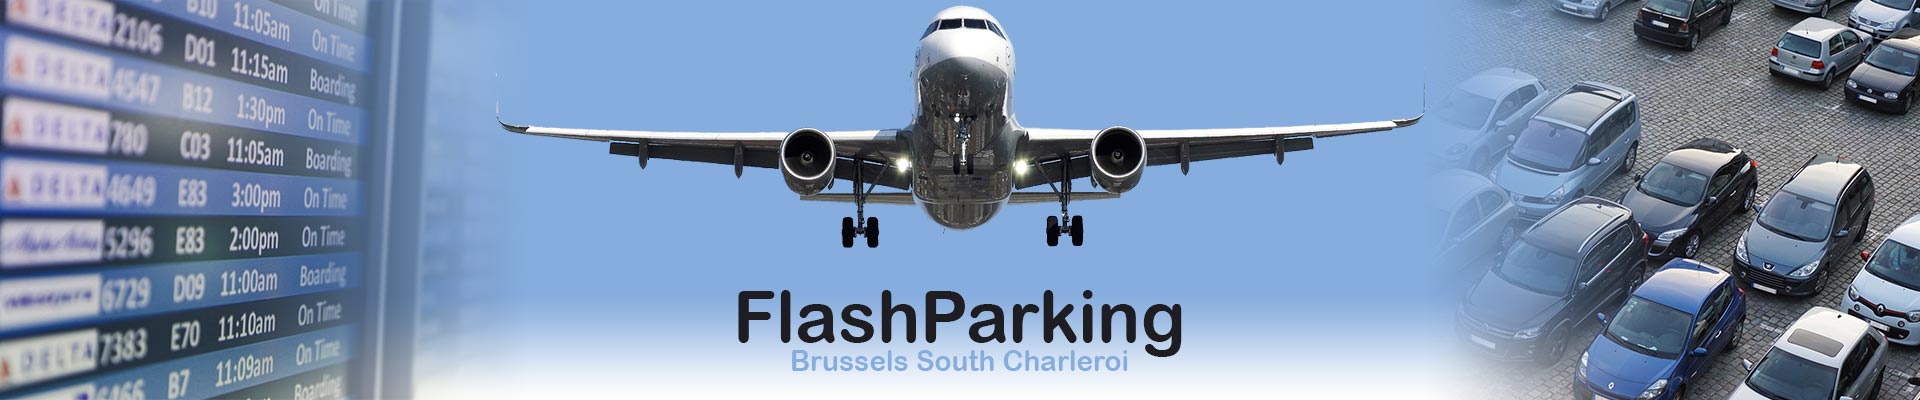 Flash parking low cost aéroport Parking Aéroport Charleroi